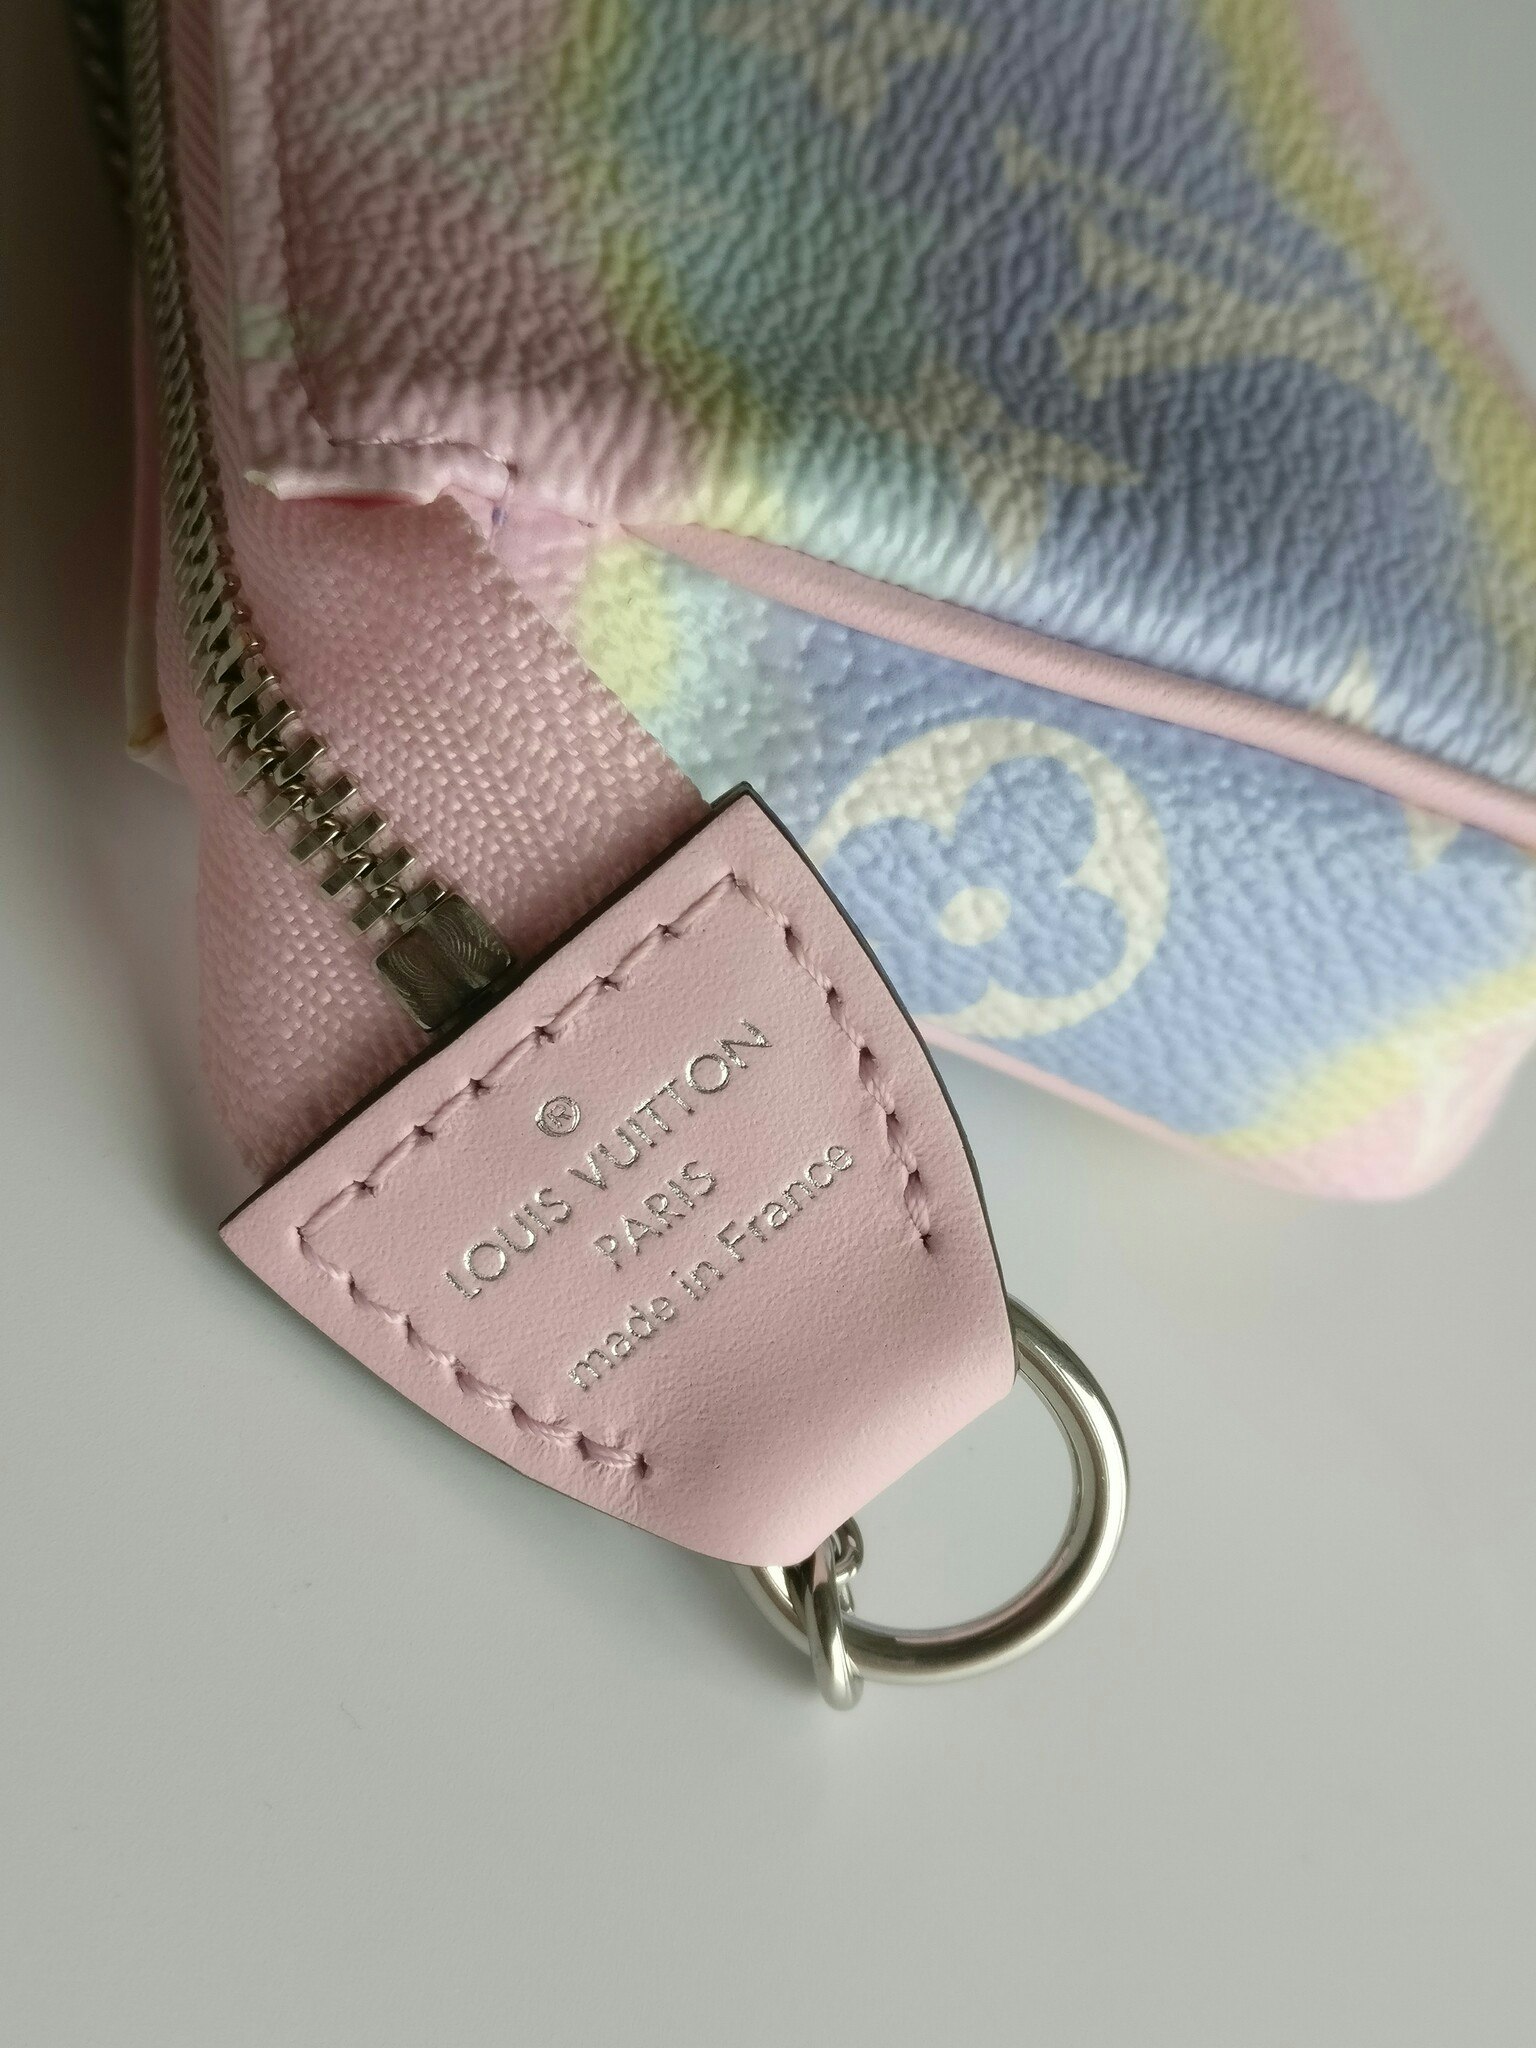 Louis Vuitton Mini Pochette Accessoires Escale Limited edition